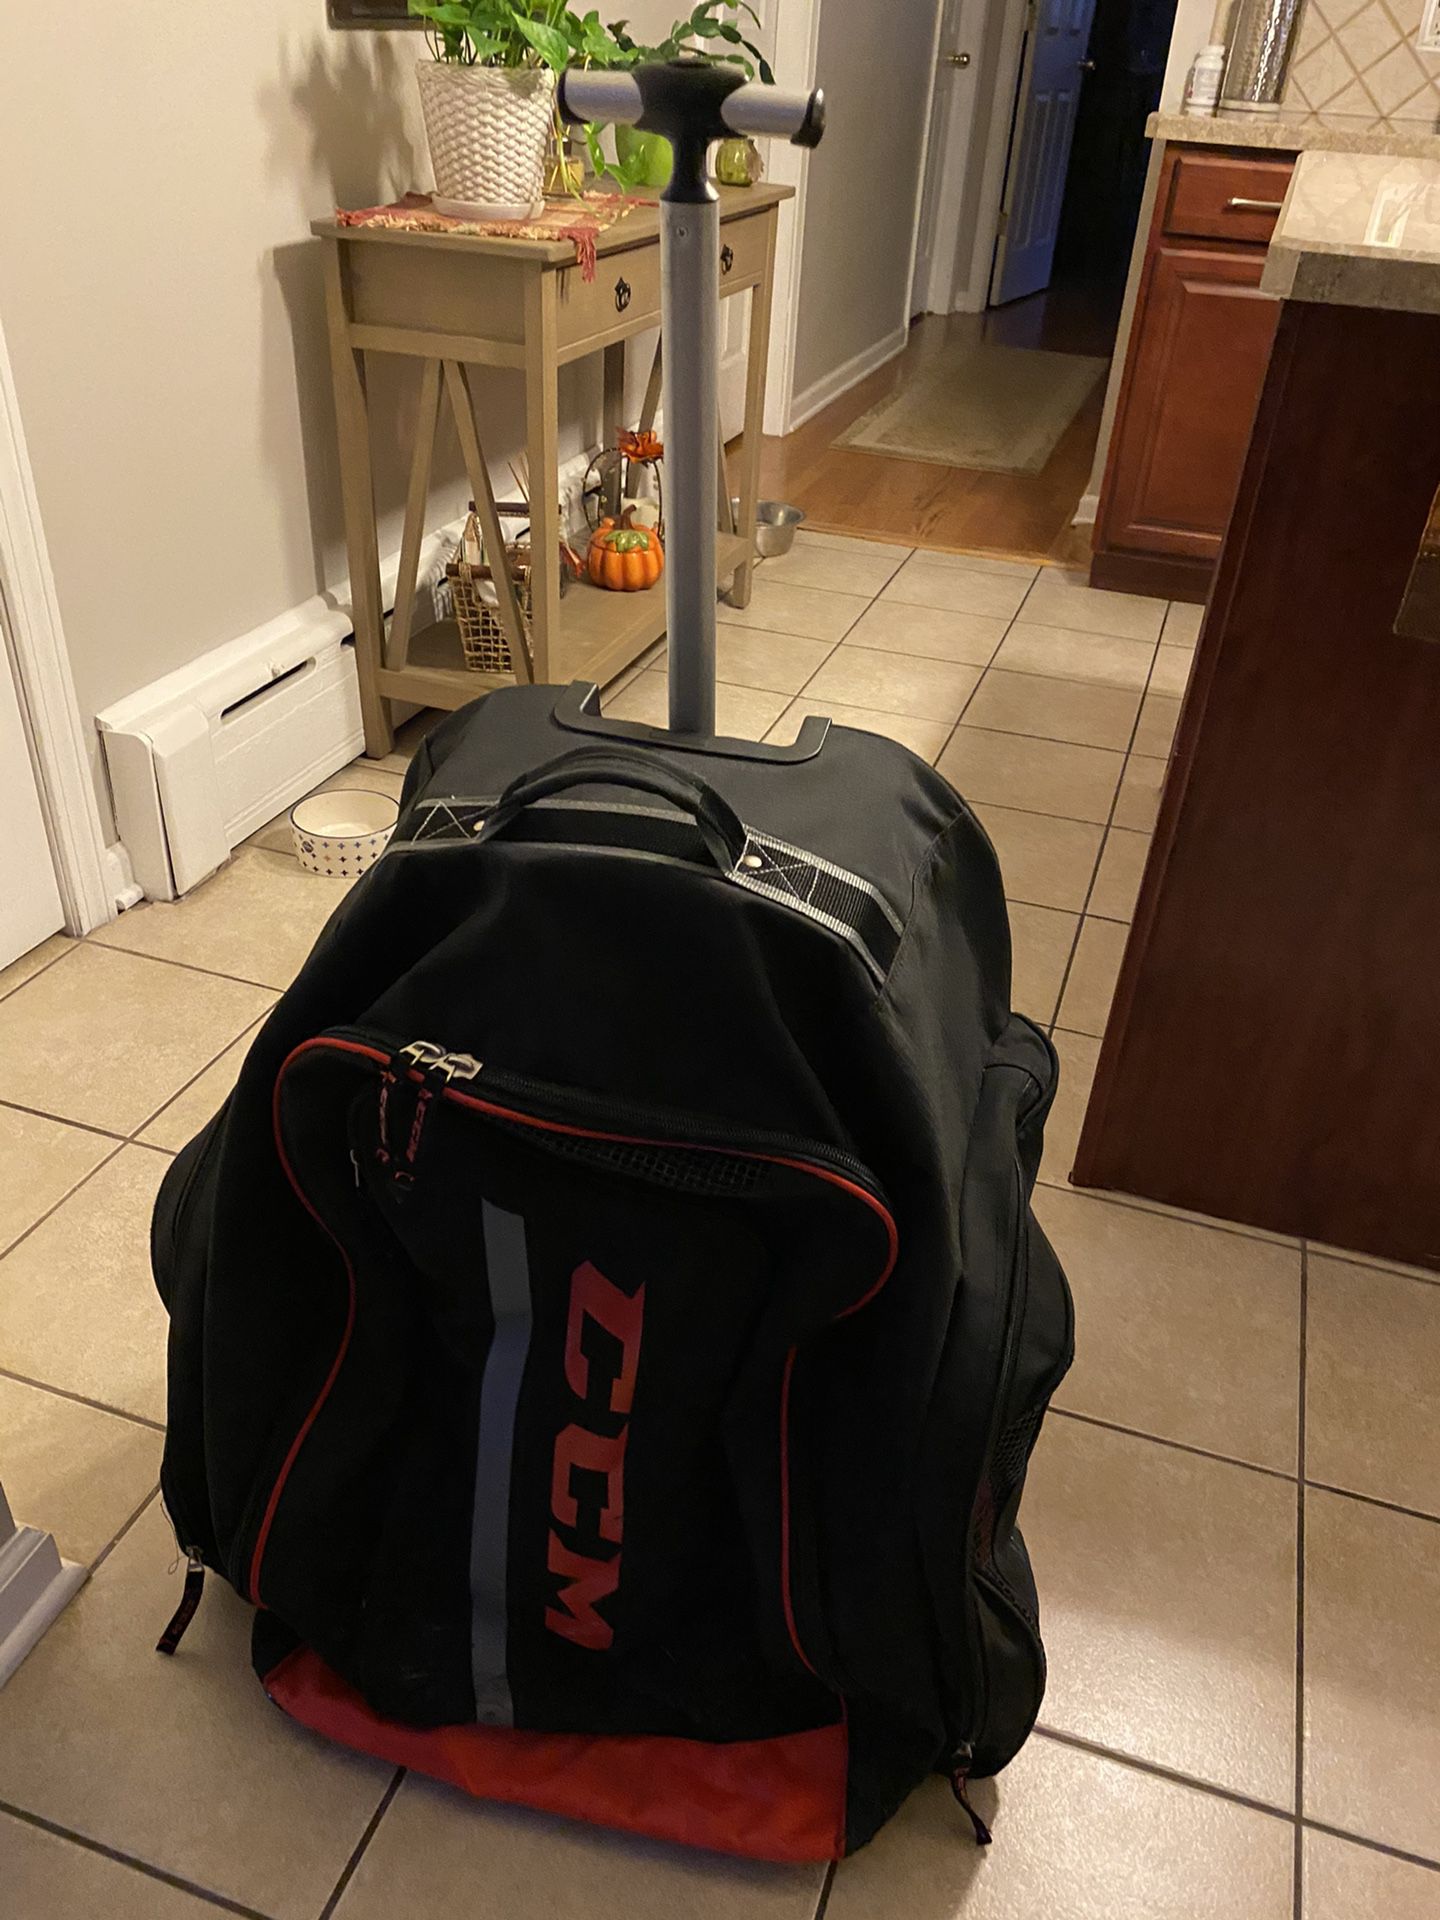 CCM hockey bag luggage sports rolls